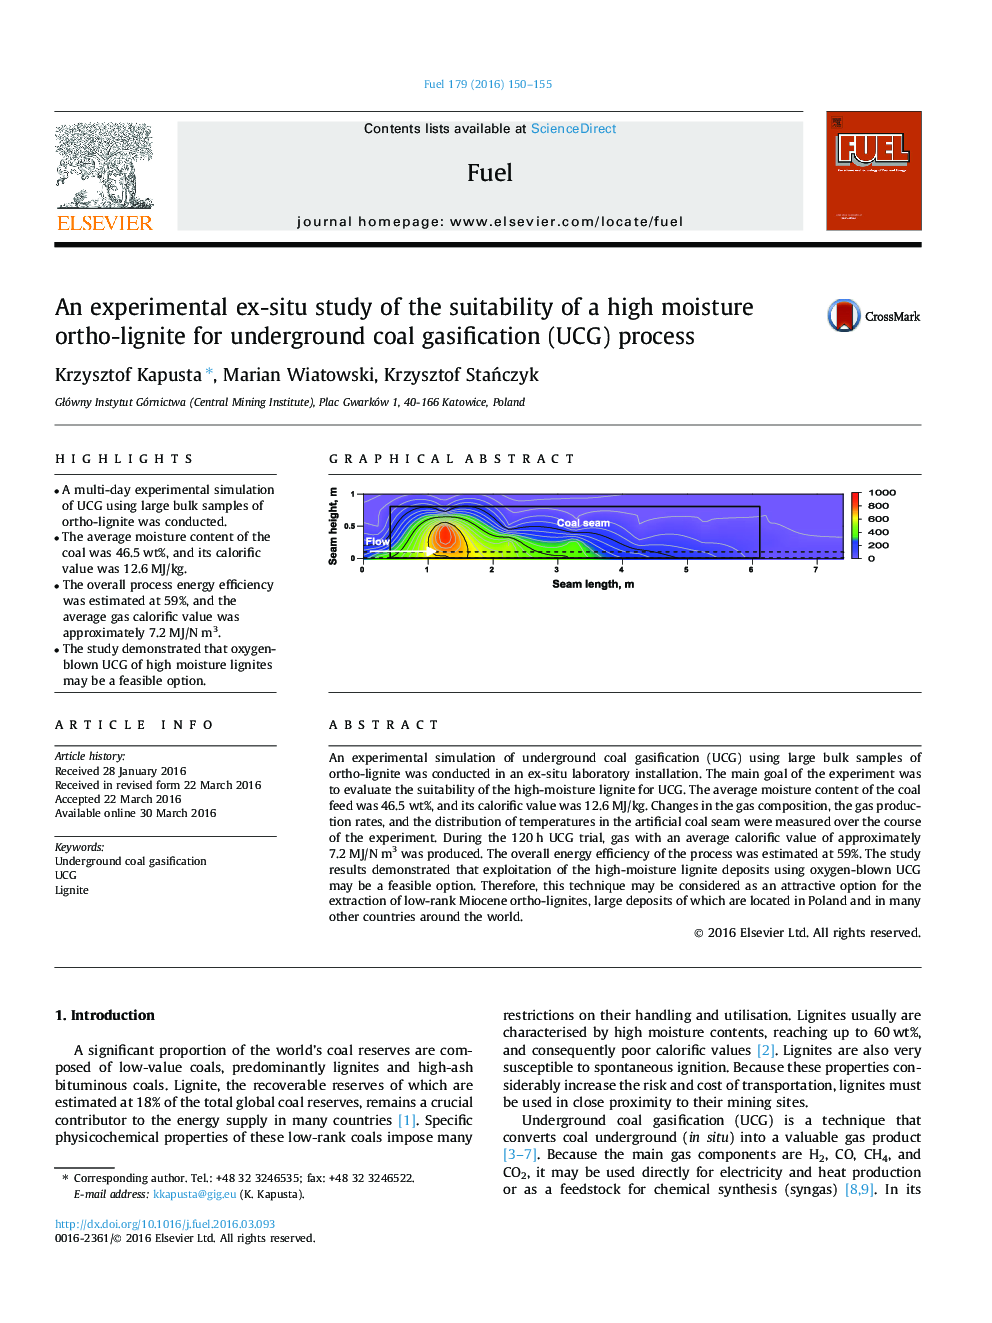 یک مطالعه ex-situ تجربی در مورد مناسب بودن رطوبت نسبی ارتو-لیگنیت برای فرایند گازسیون زیرزمینی (UCG)